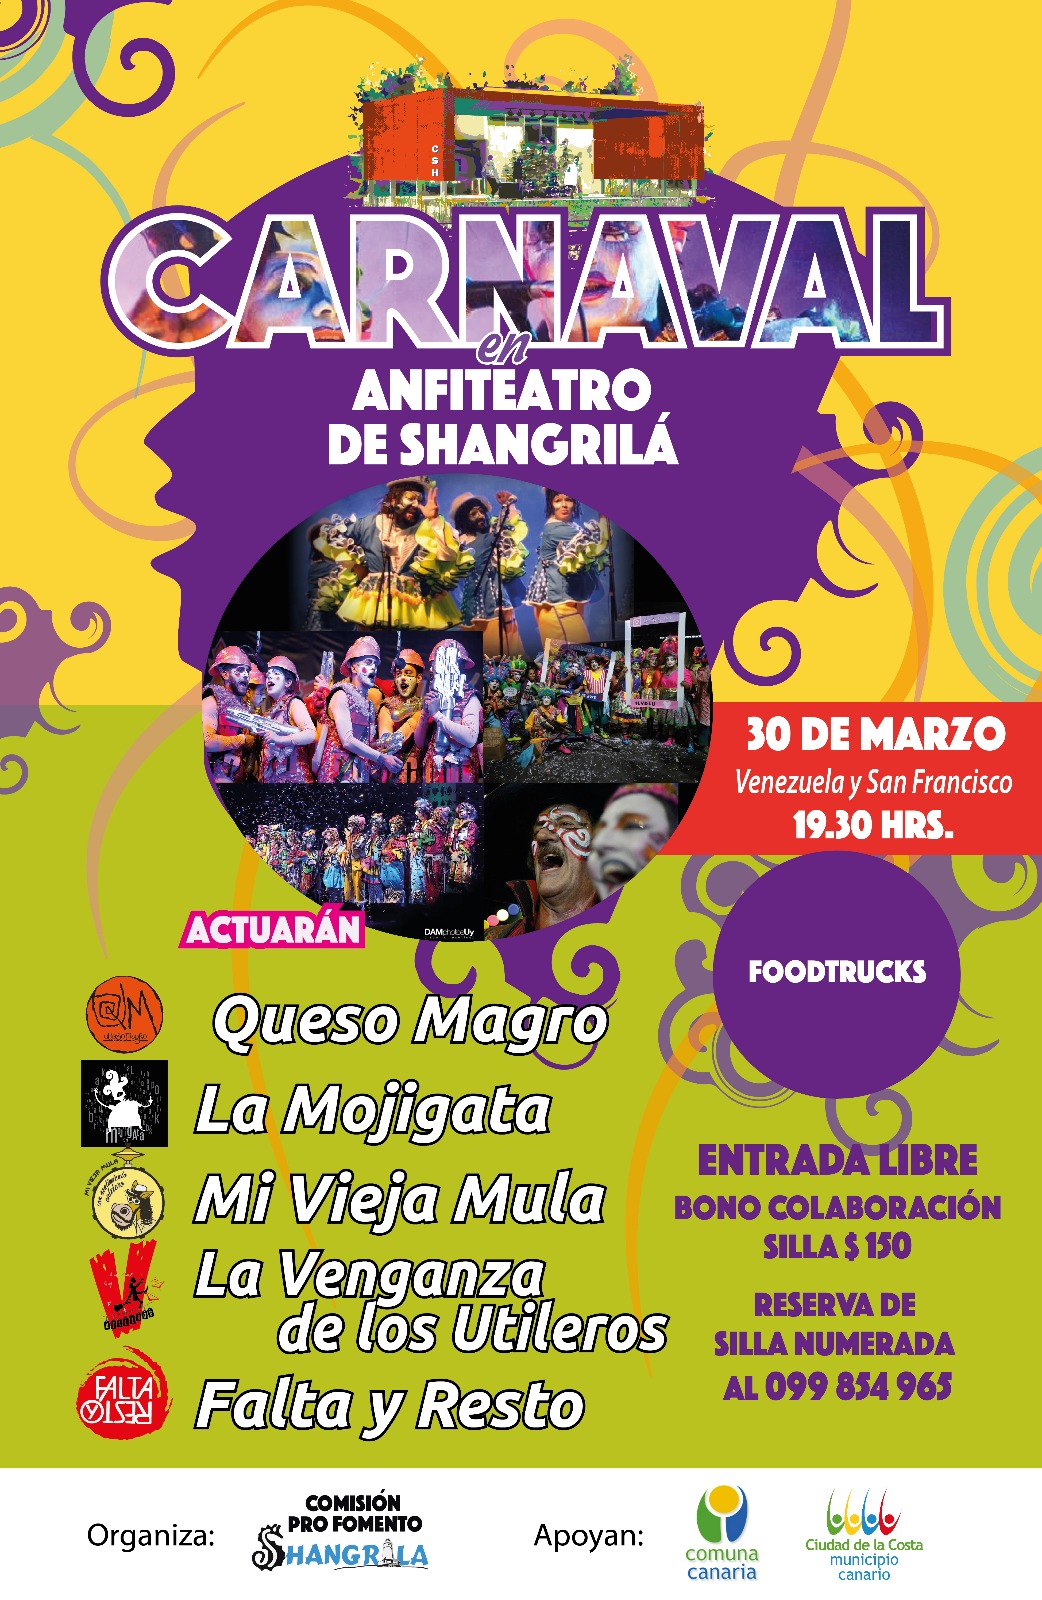 SABADO 30 de marzo: Cartelera de carnaval en el ANFITEATRO de Shangrilá